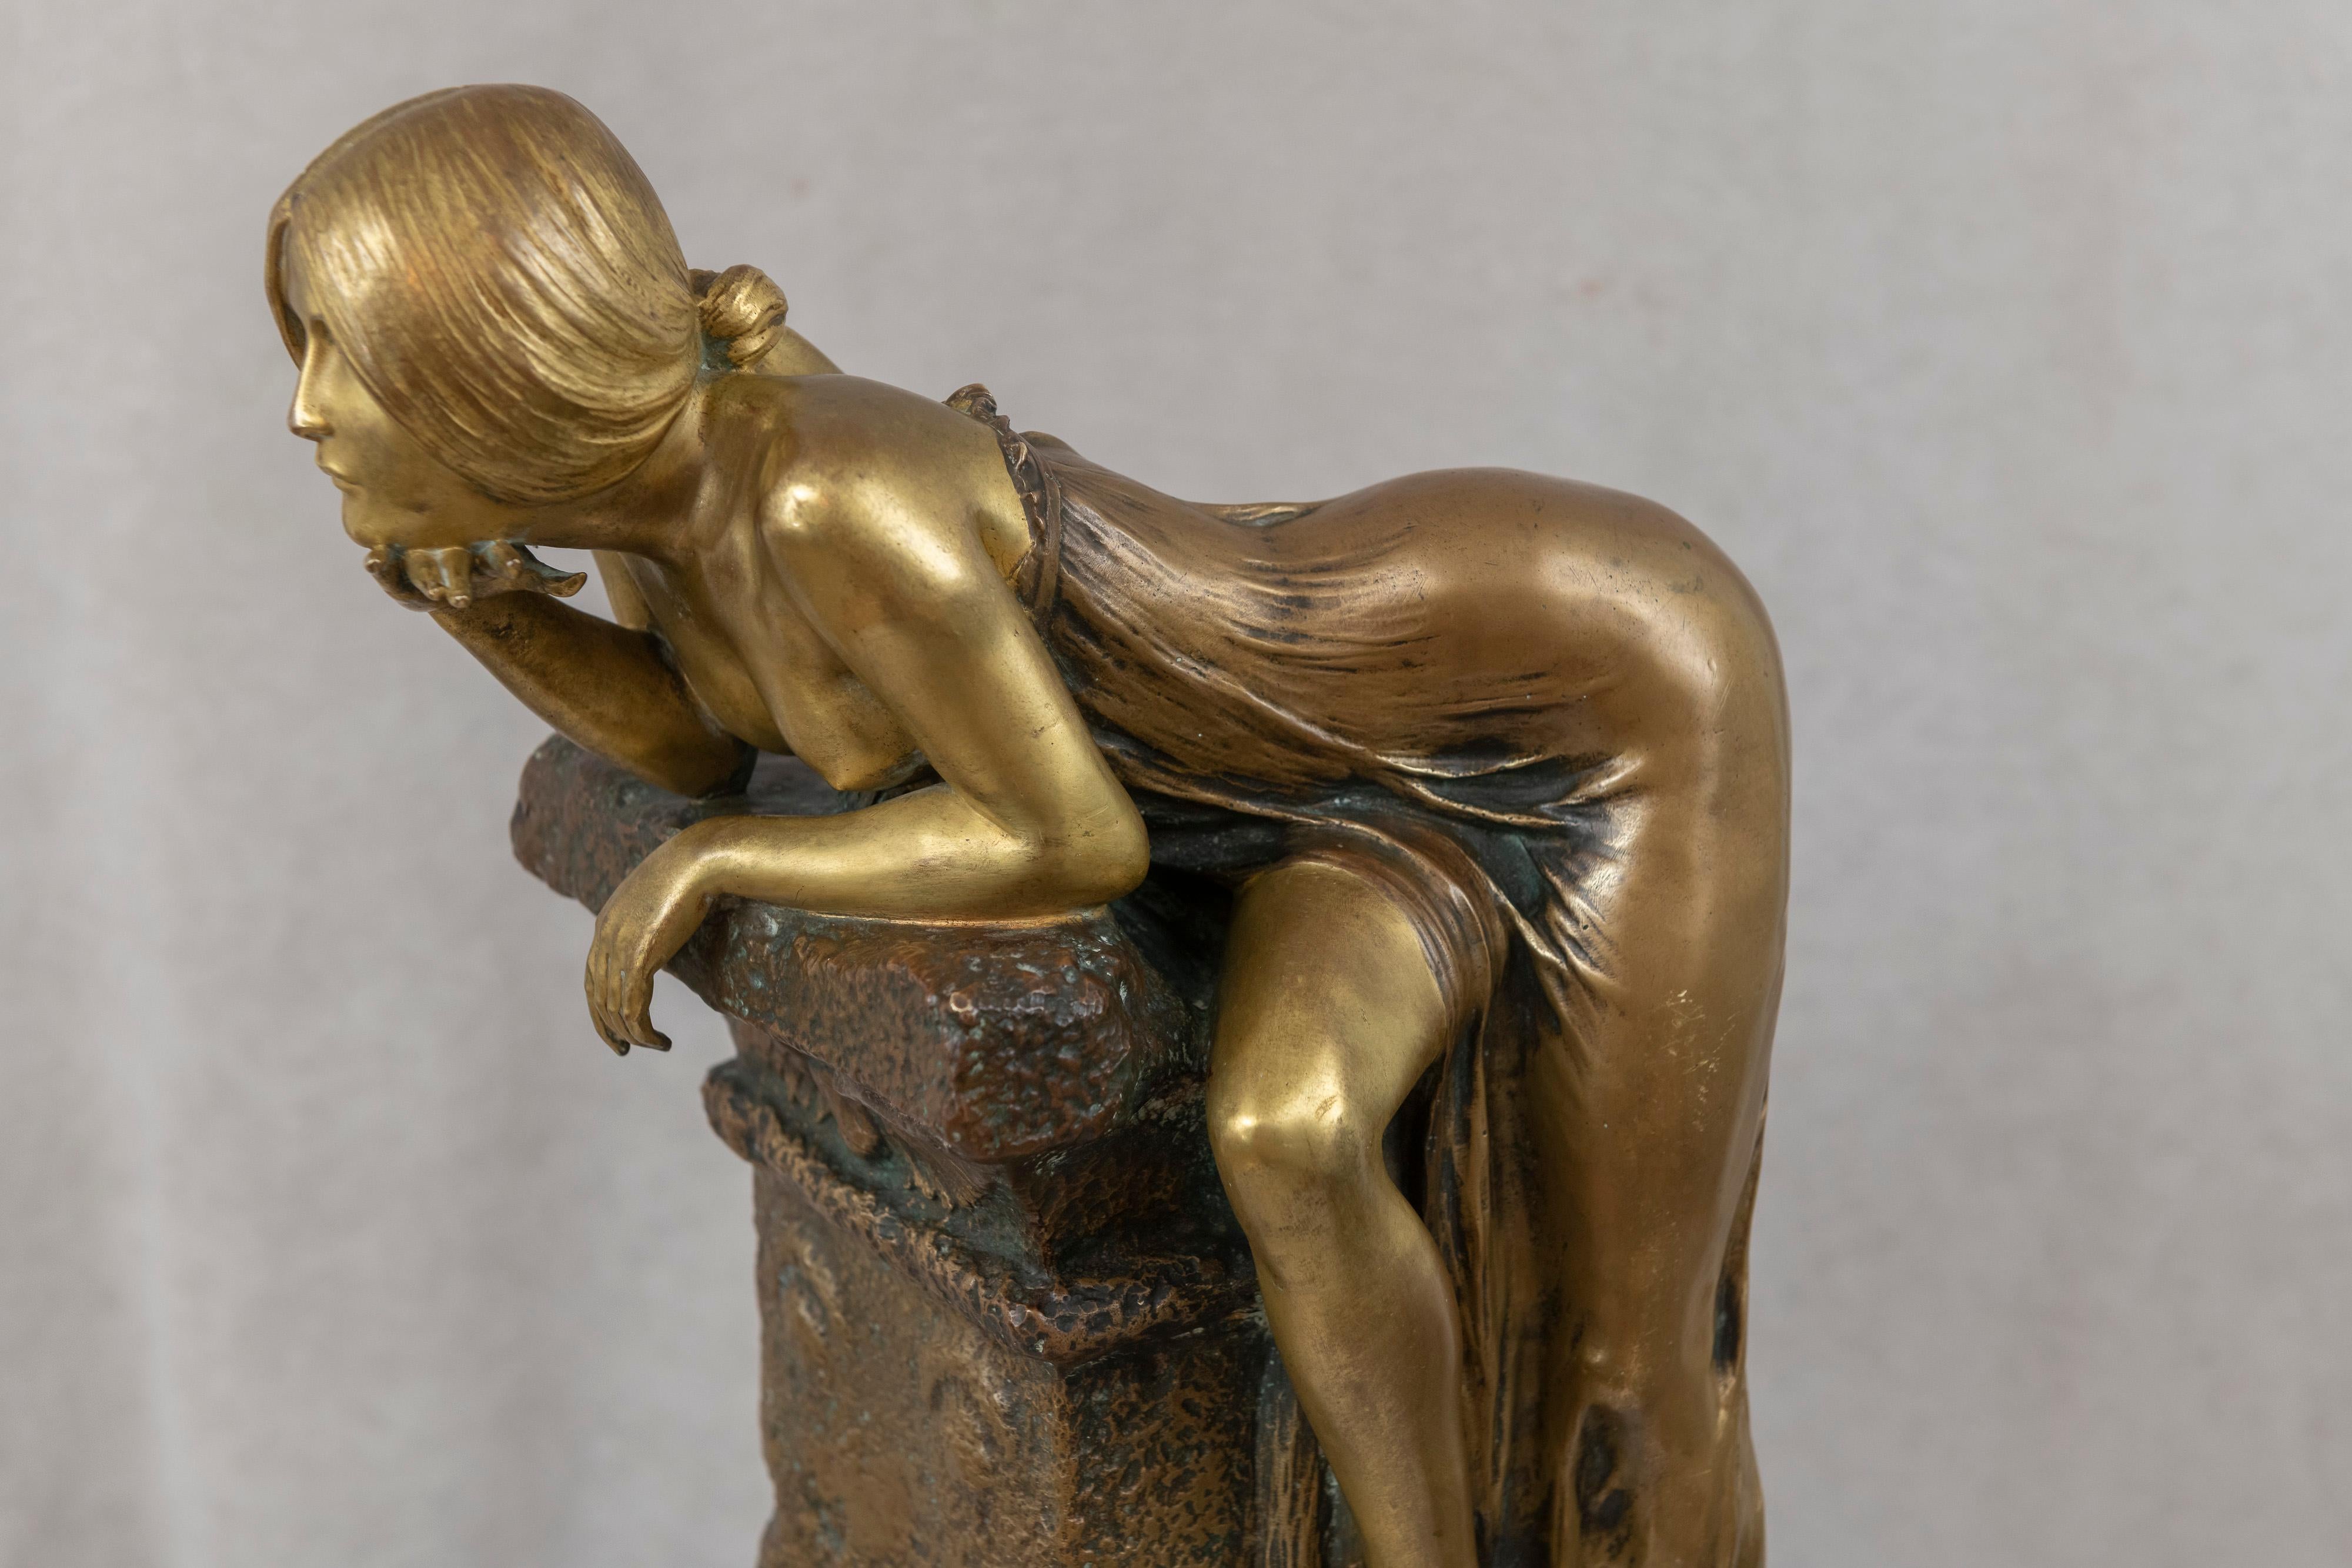 French Exceptional Art Nouveau Bronze Sculpture, by Louis Chalon